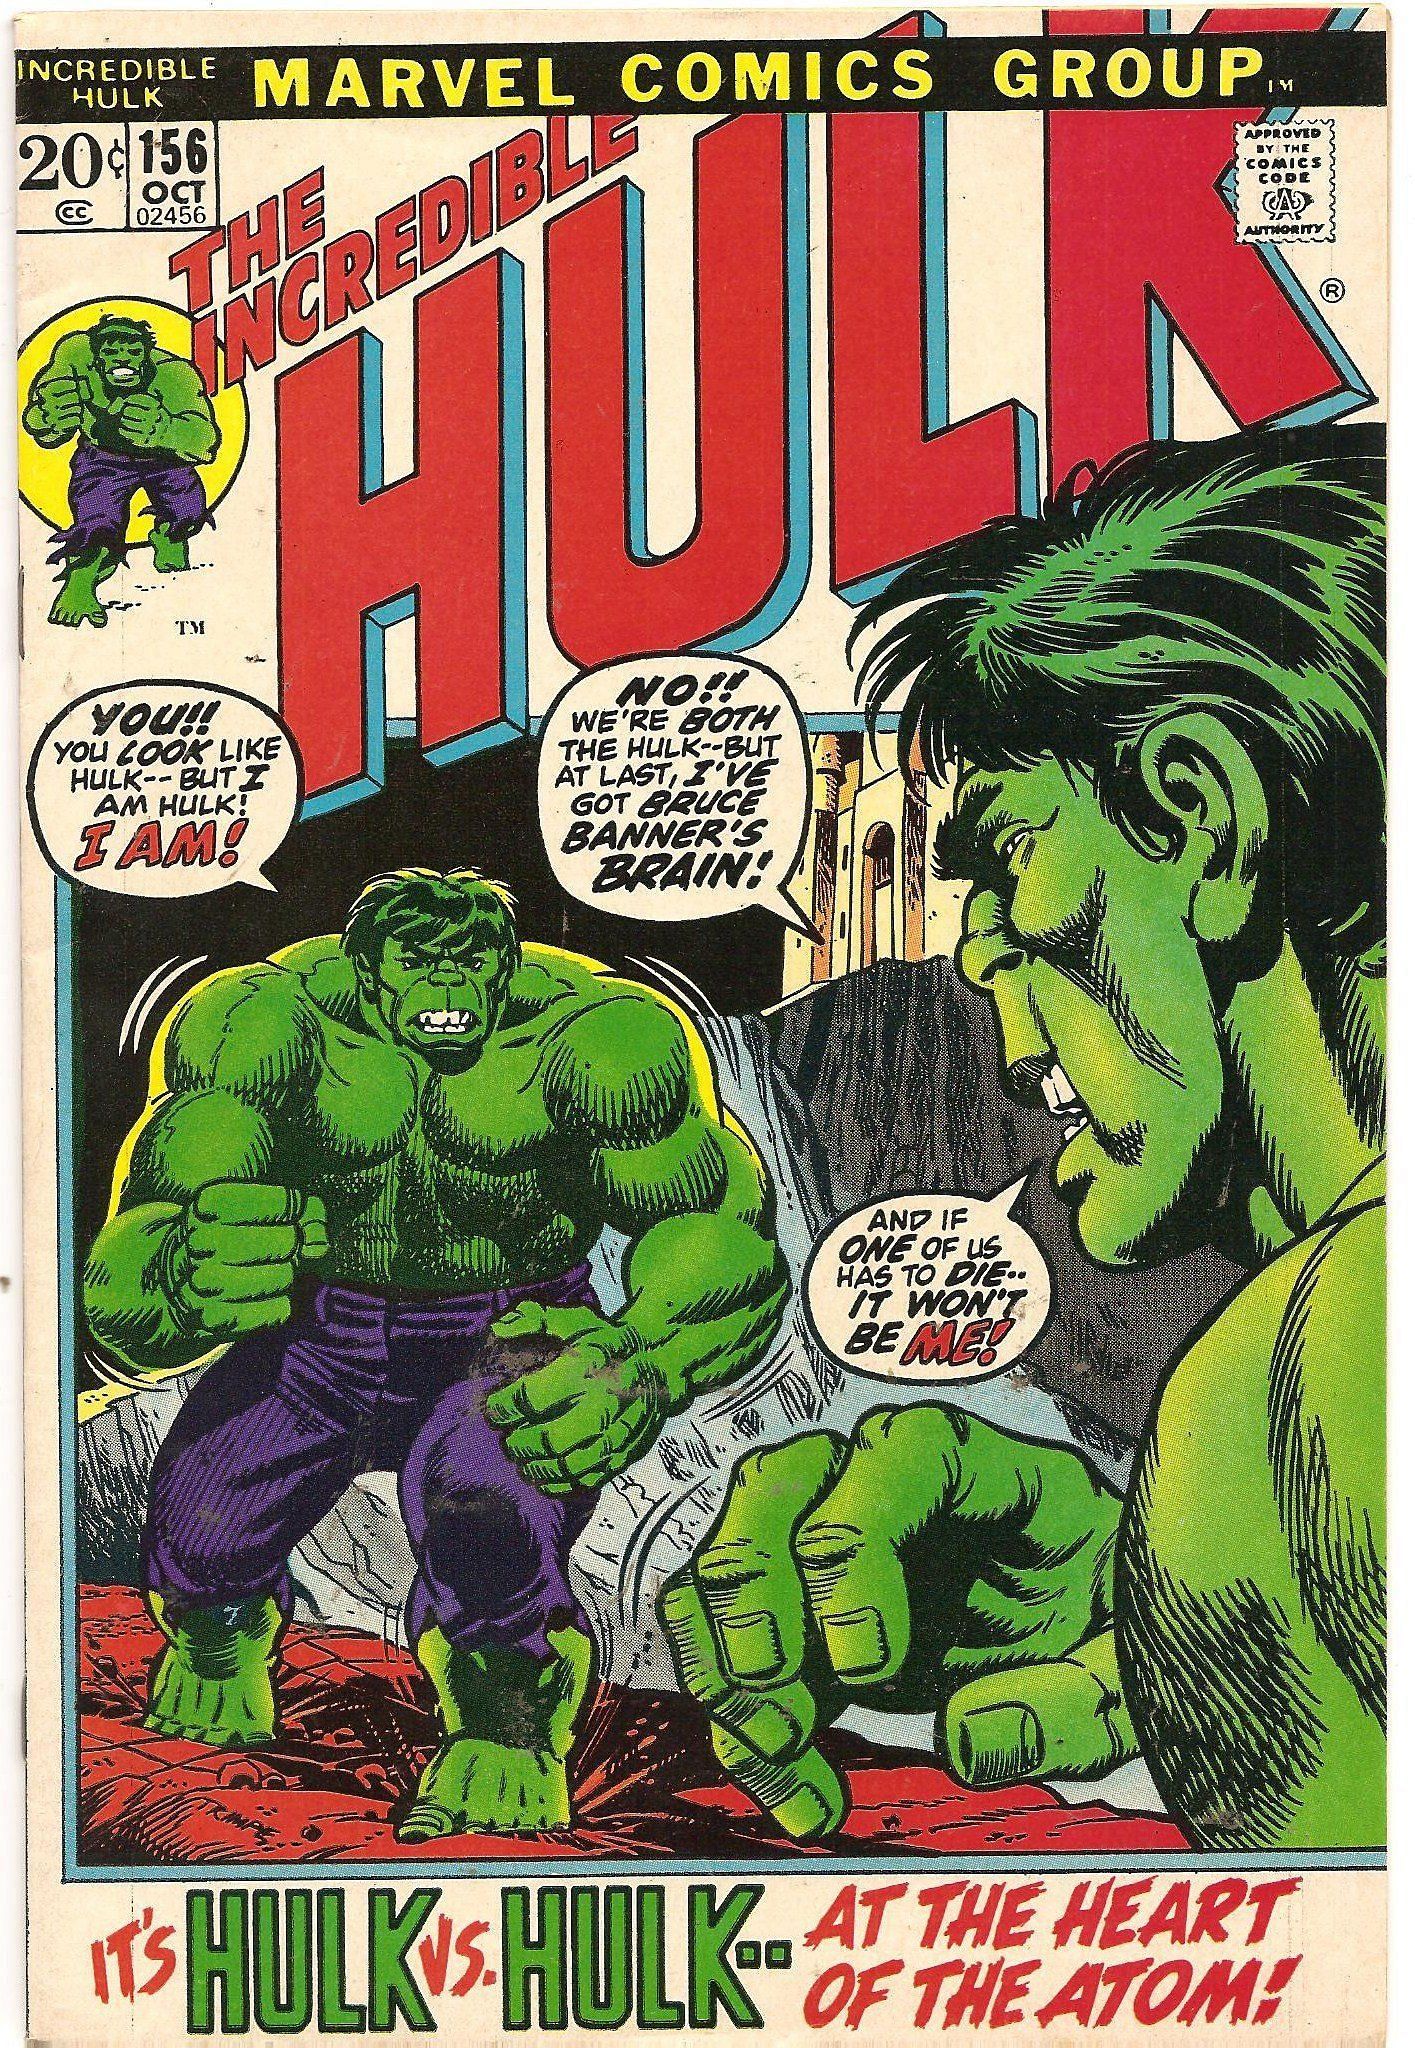 The Incredible Hulk #156 (Image via Marvel Comics)